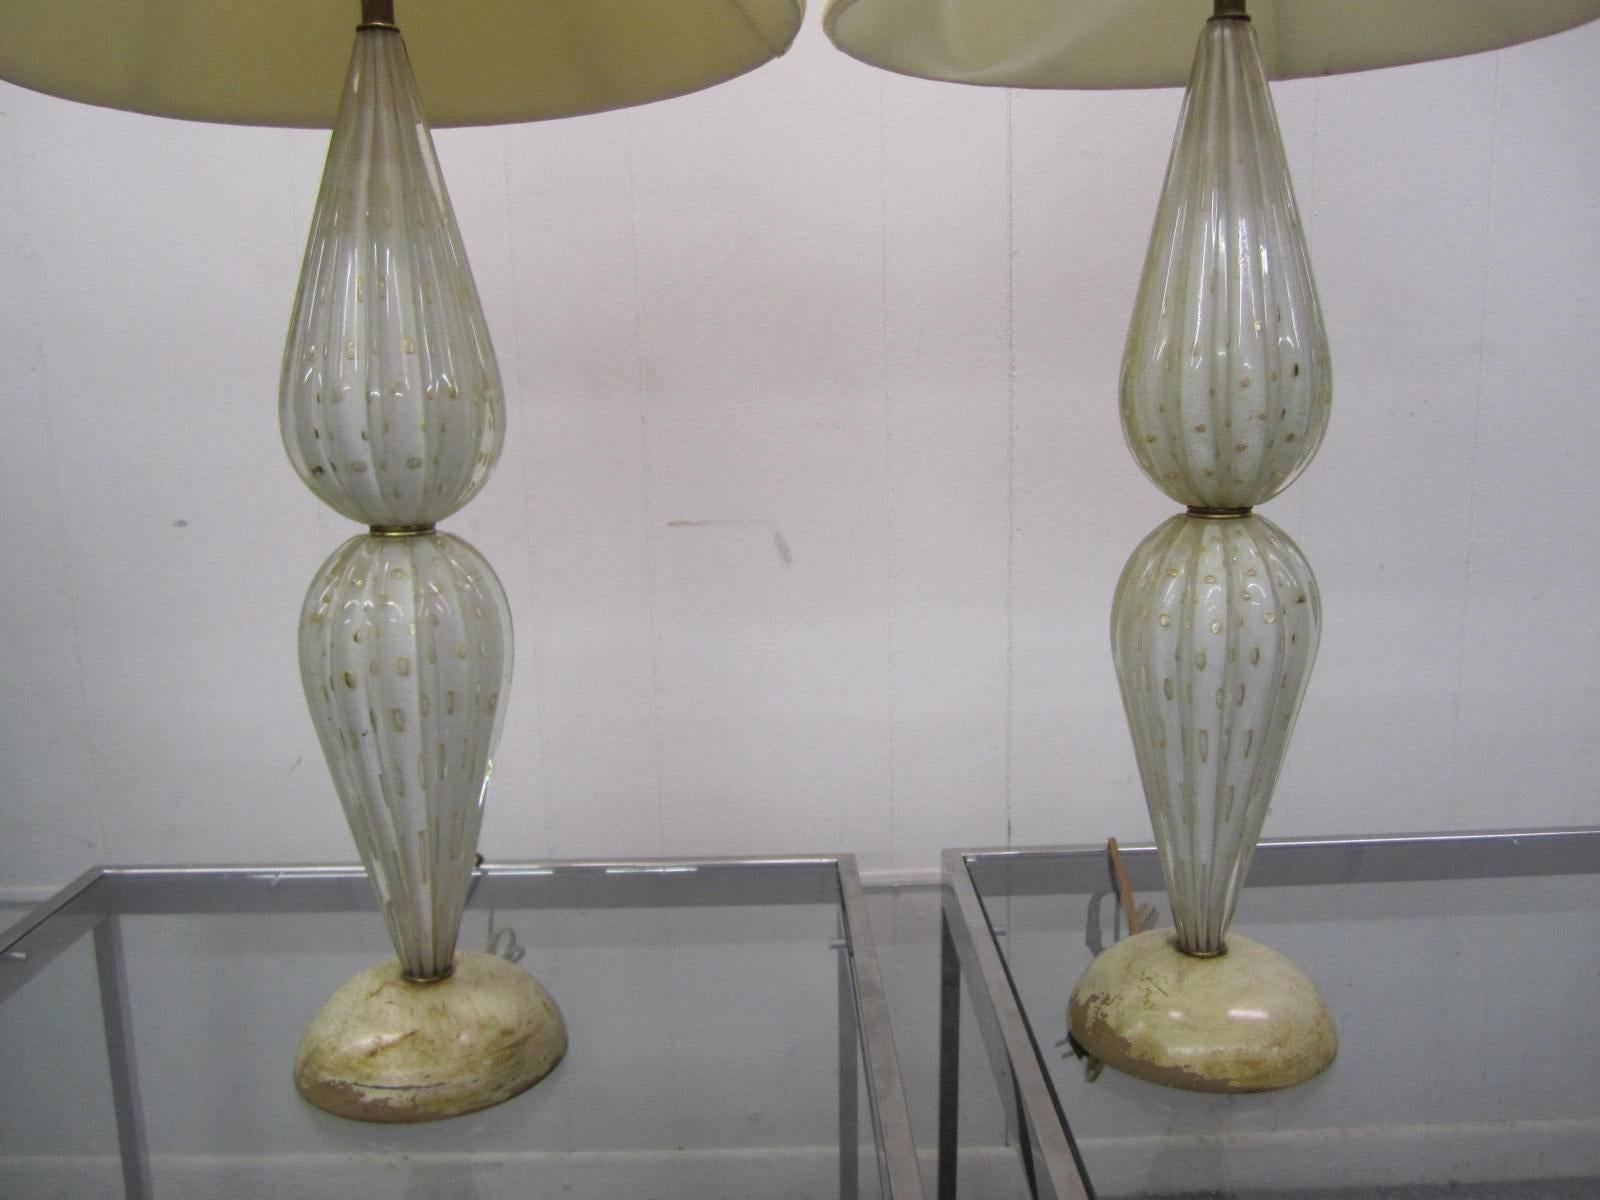 Belle paire de lampes Barovier & Toso Murano, le verre est clair sur blanc avec des mouchetures dorées. Nous aimons le verre raffiné avec les bases patinées shabby chic.